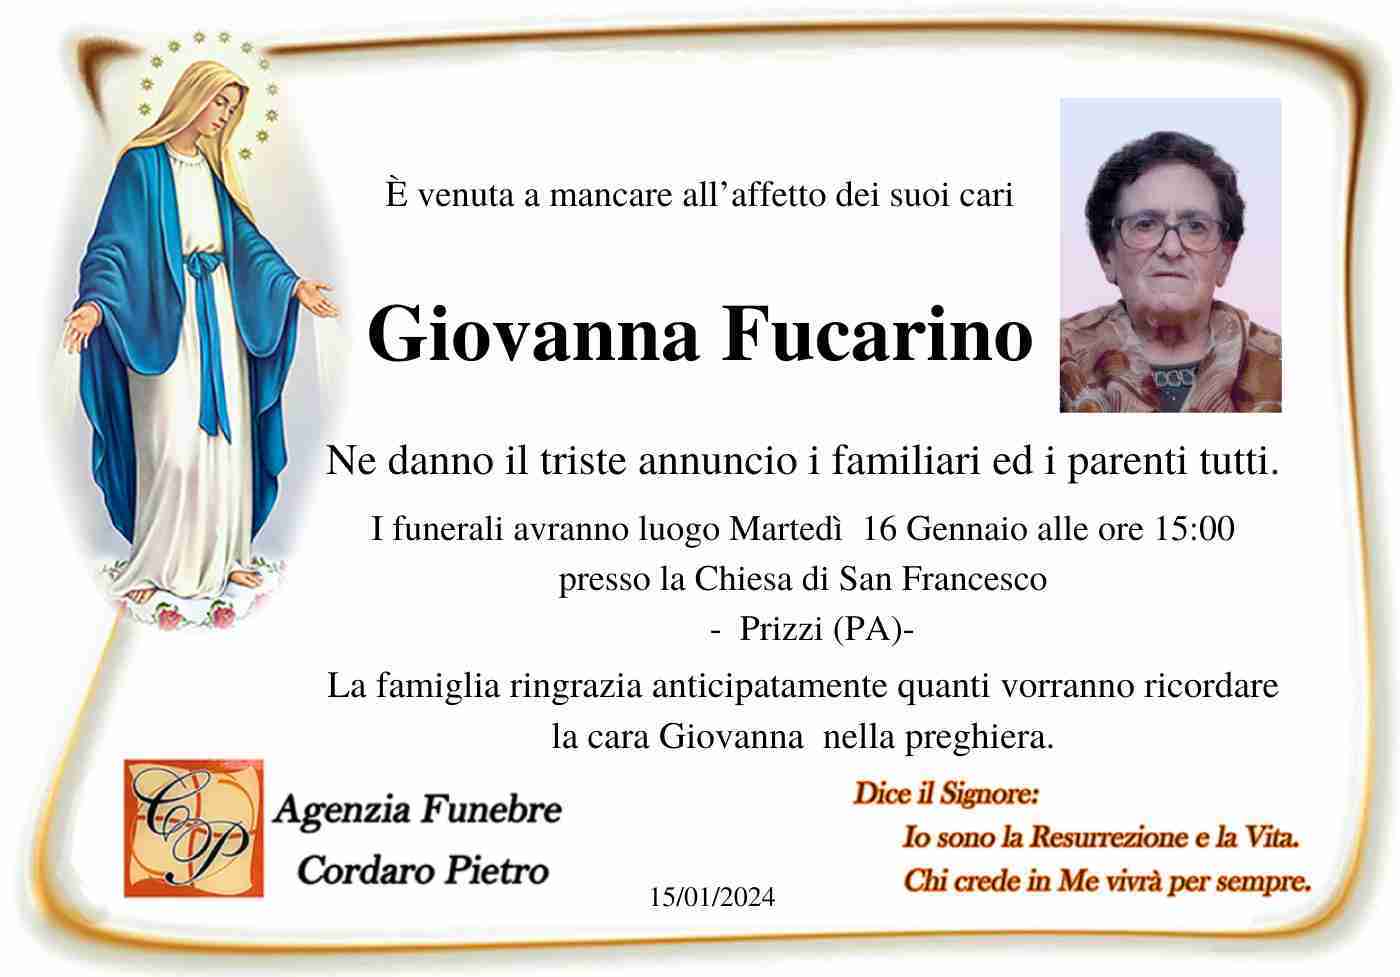 Giovanna Fucarino